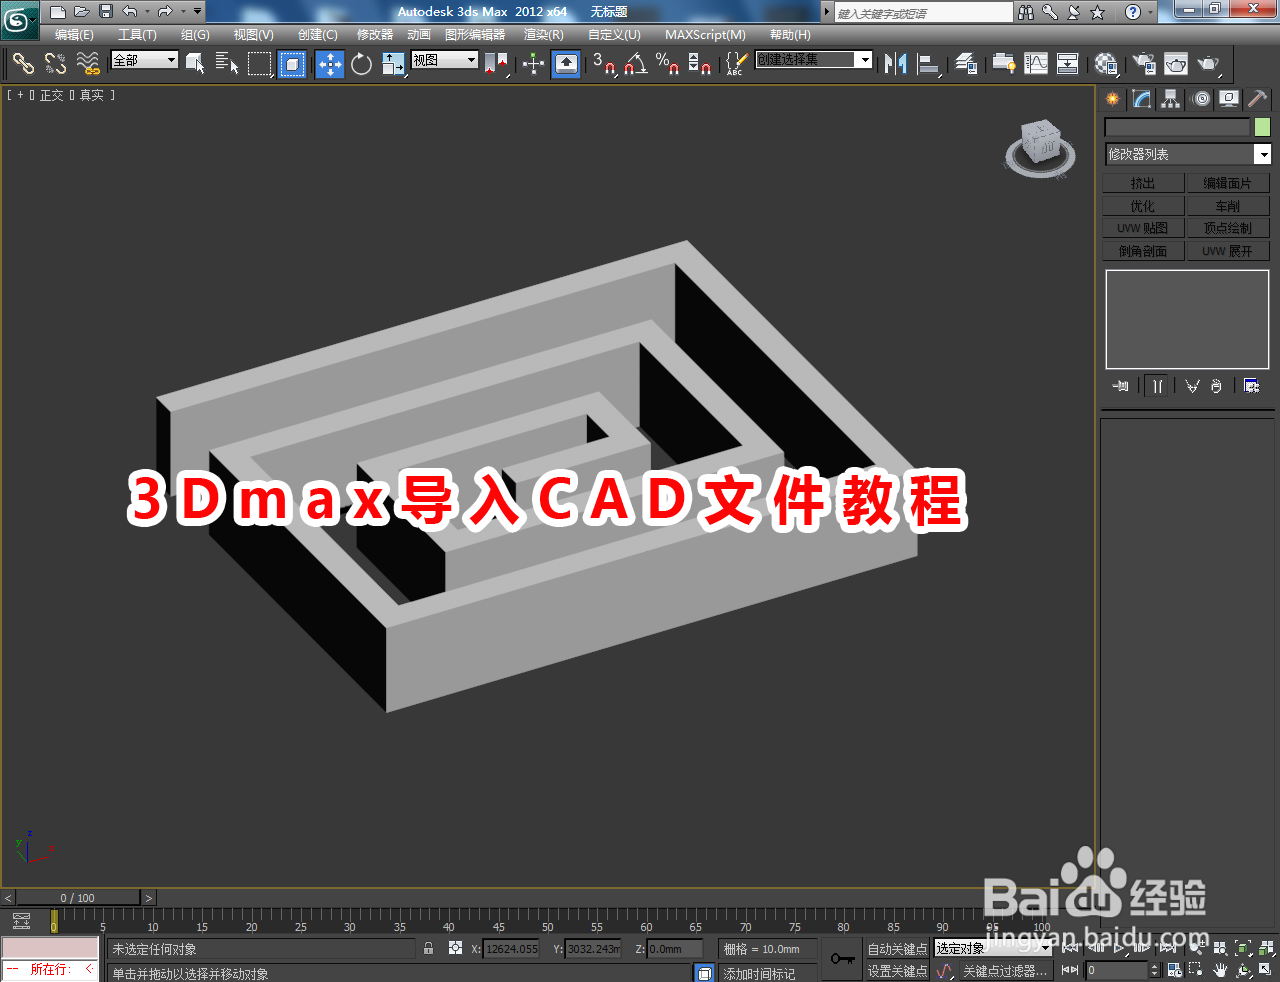 <b>3Dmax导入CAD文件教程</b>